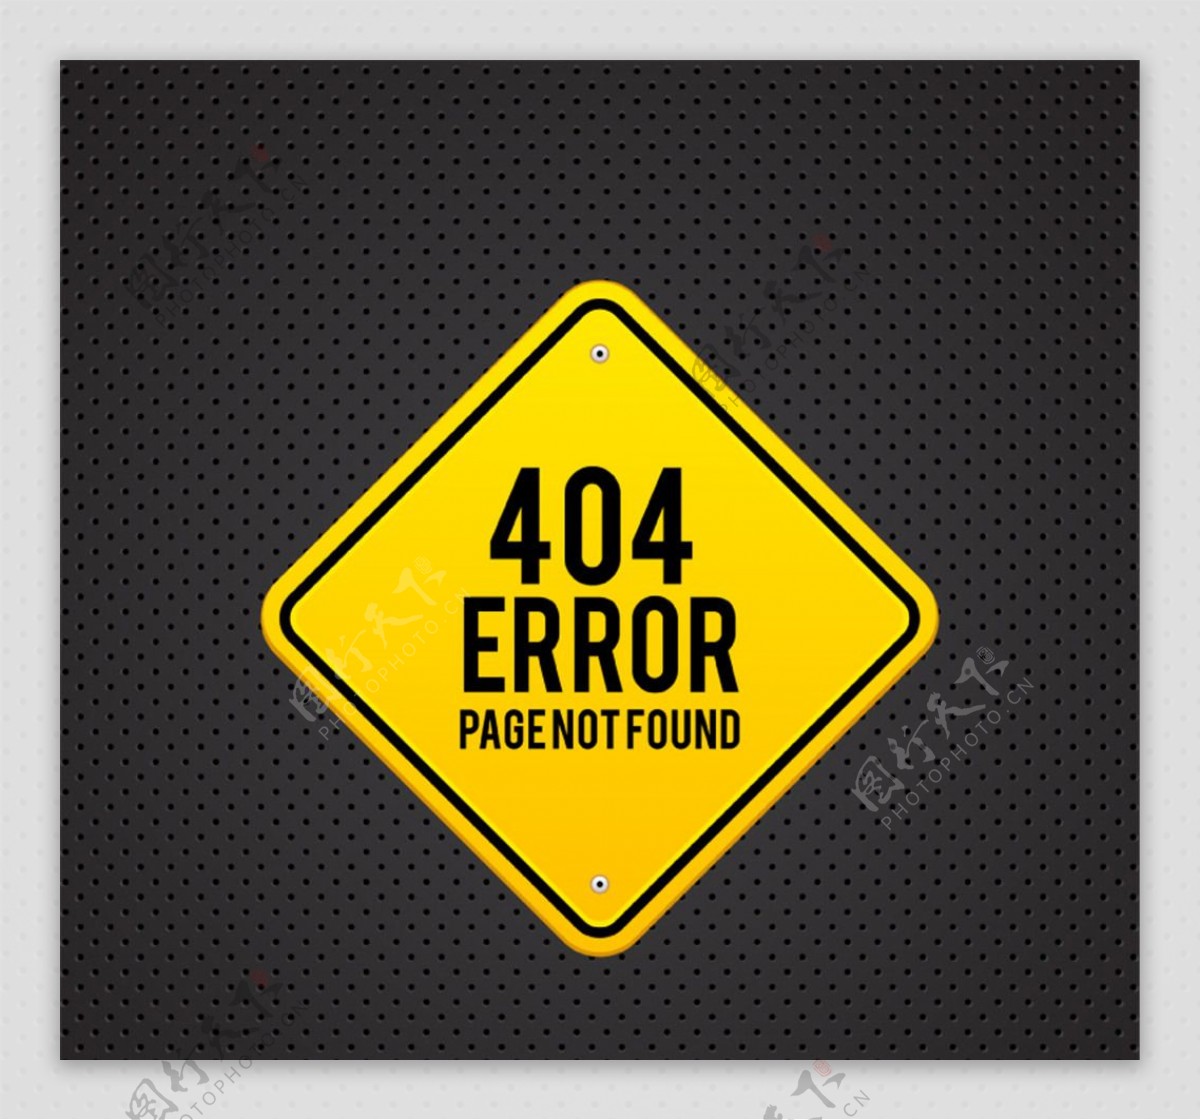 金属404错误页面设计矢量素材